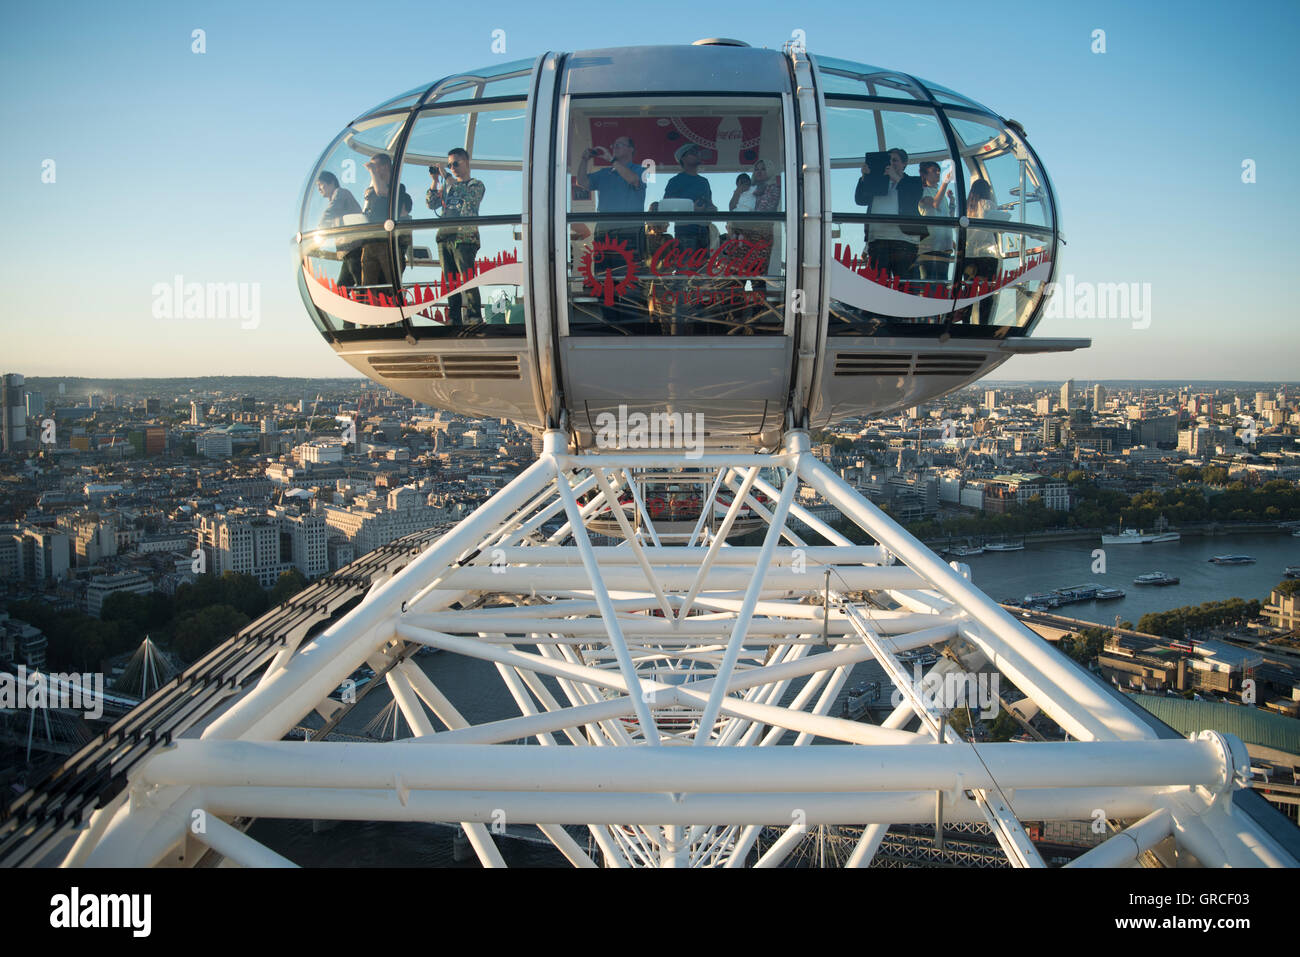 La grande roue London Eye surplombant la rivière Thames, Londres, Angleterre. Banque D'Images